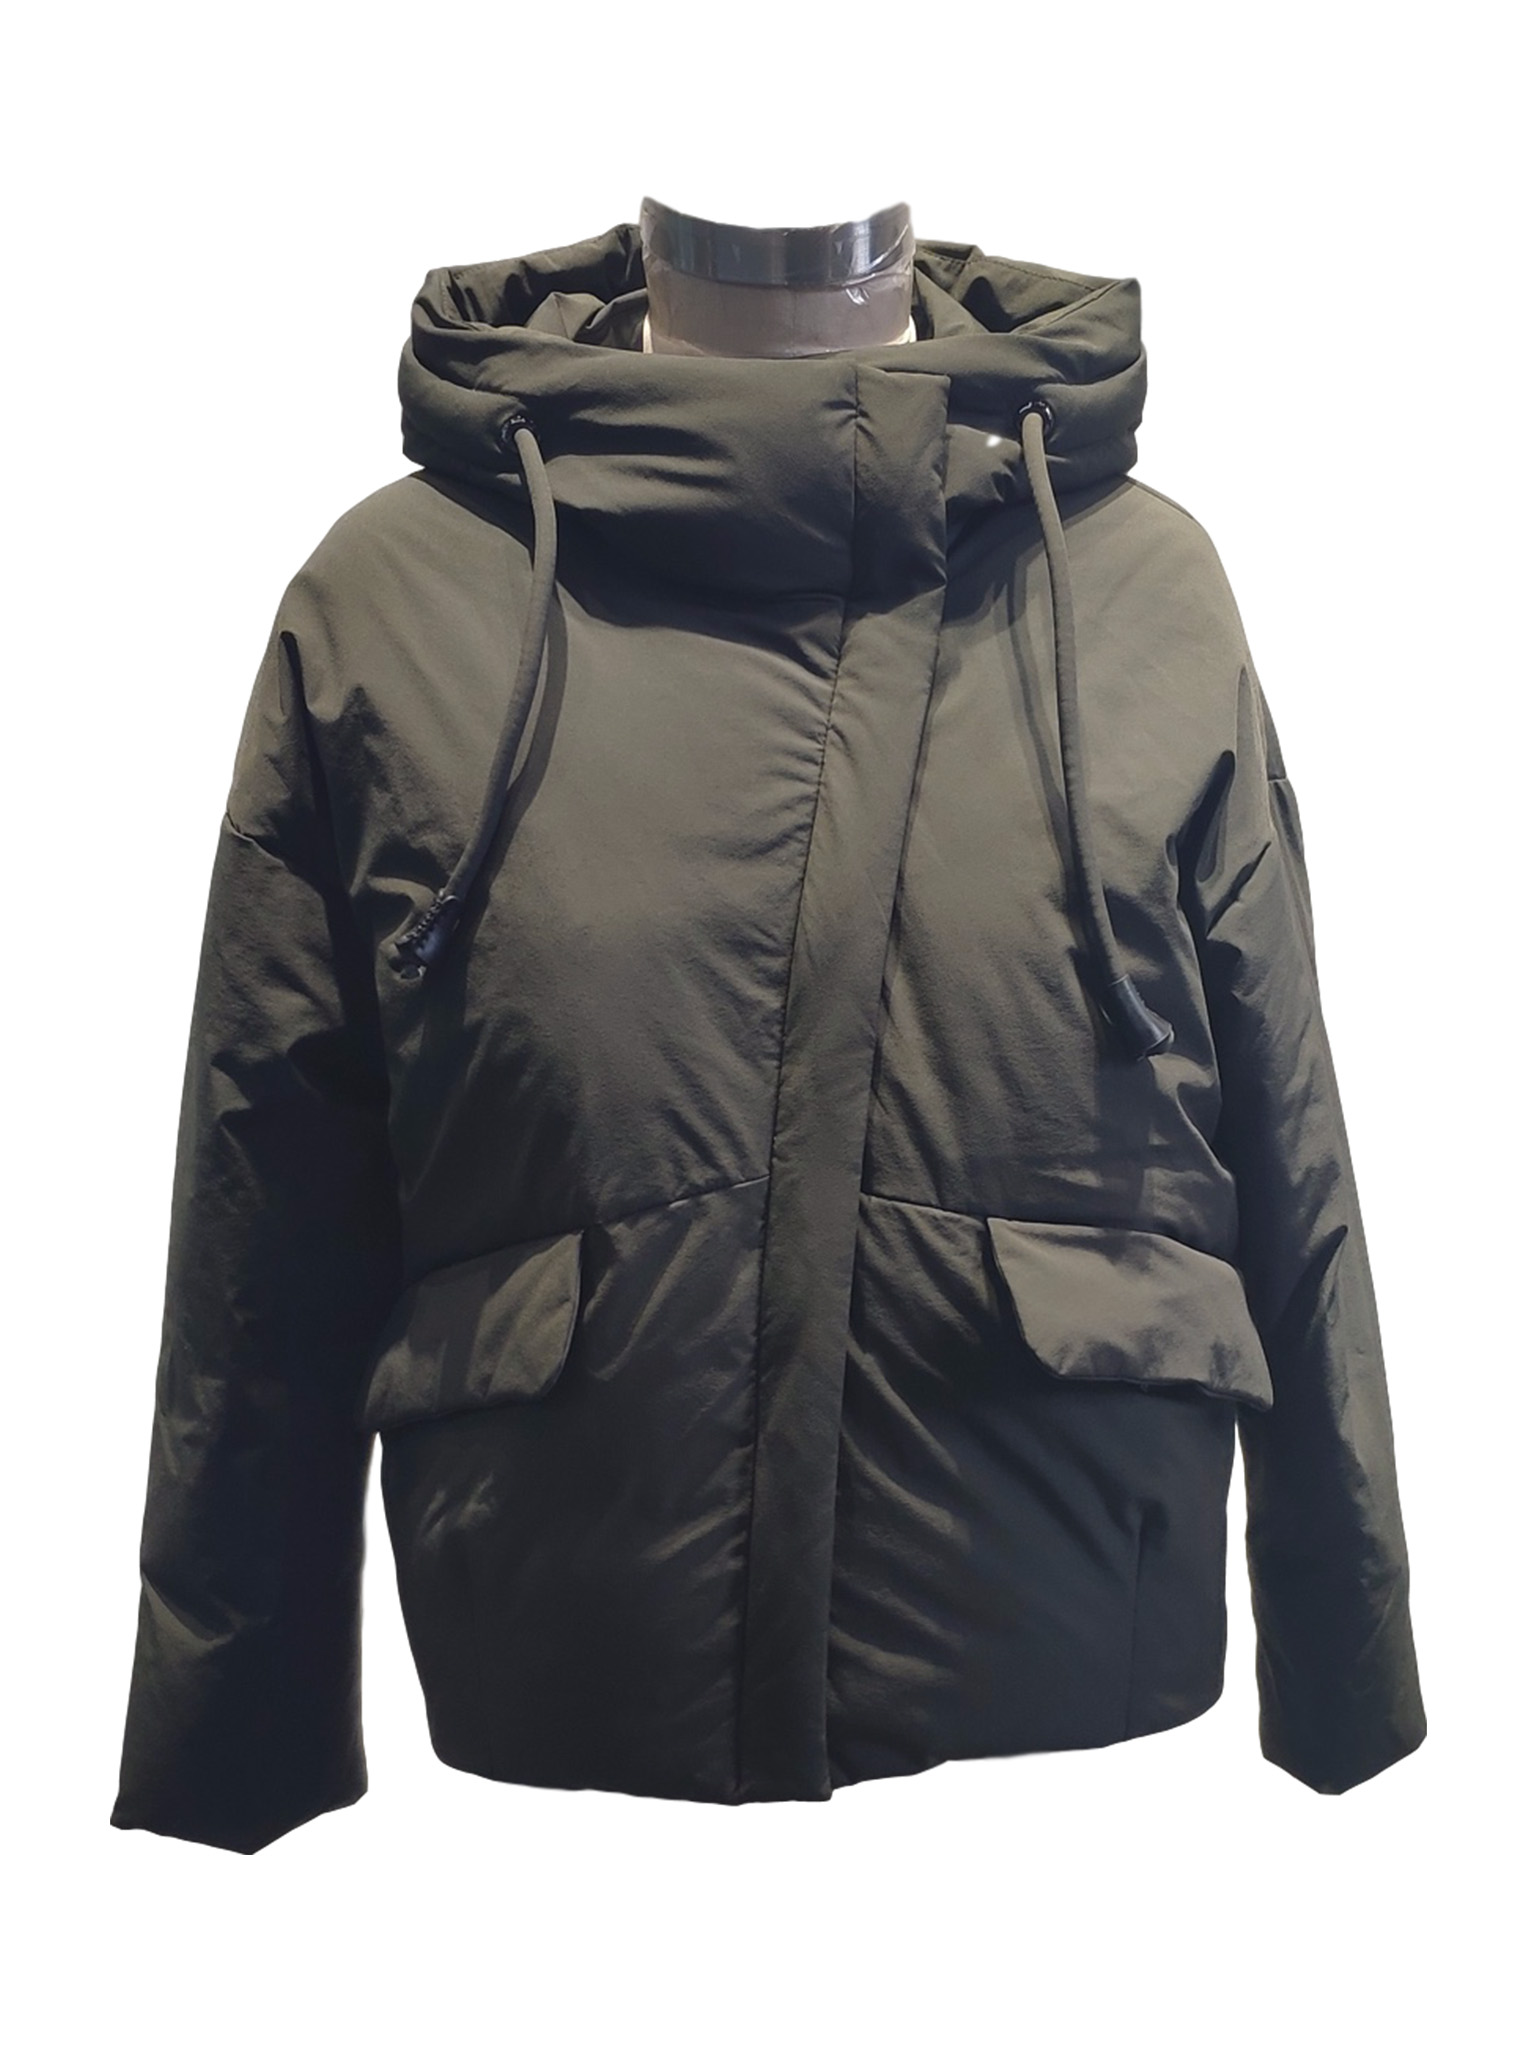 patagonia down jacket manufacturer